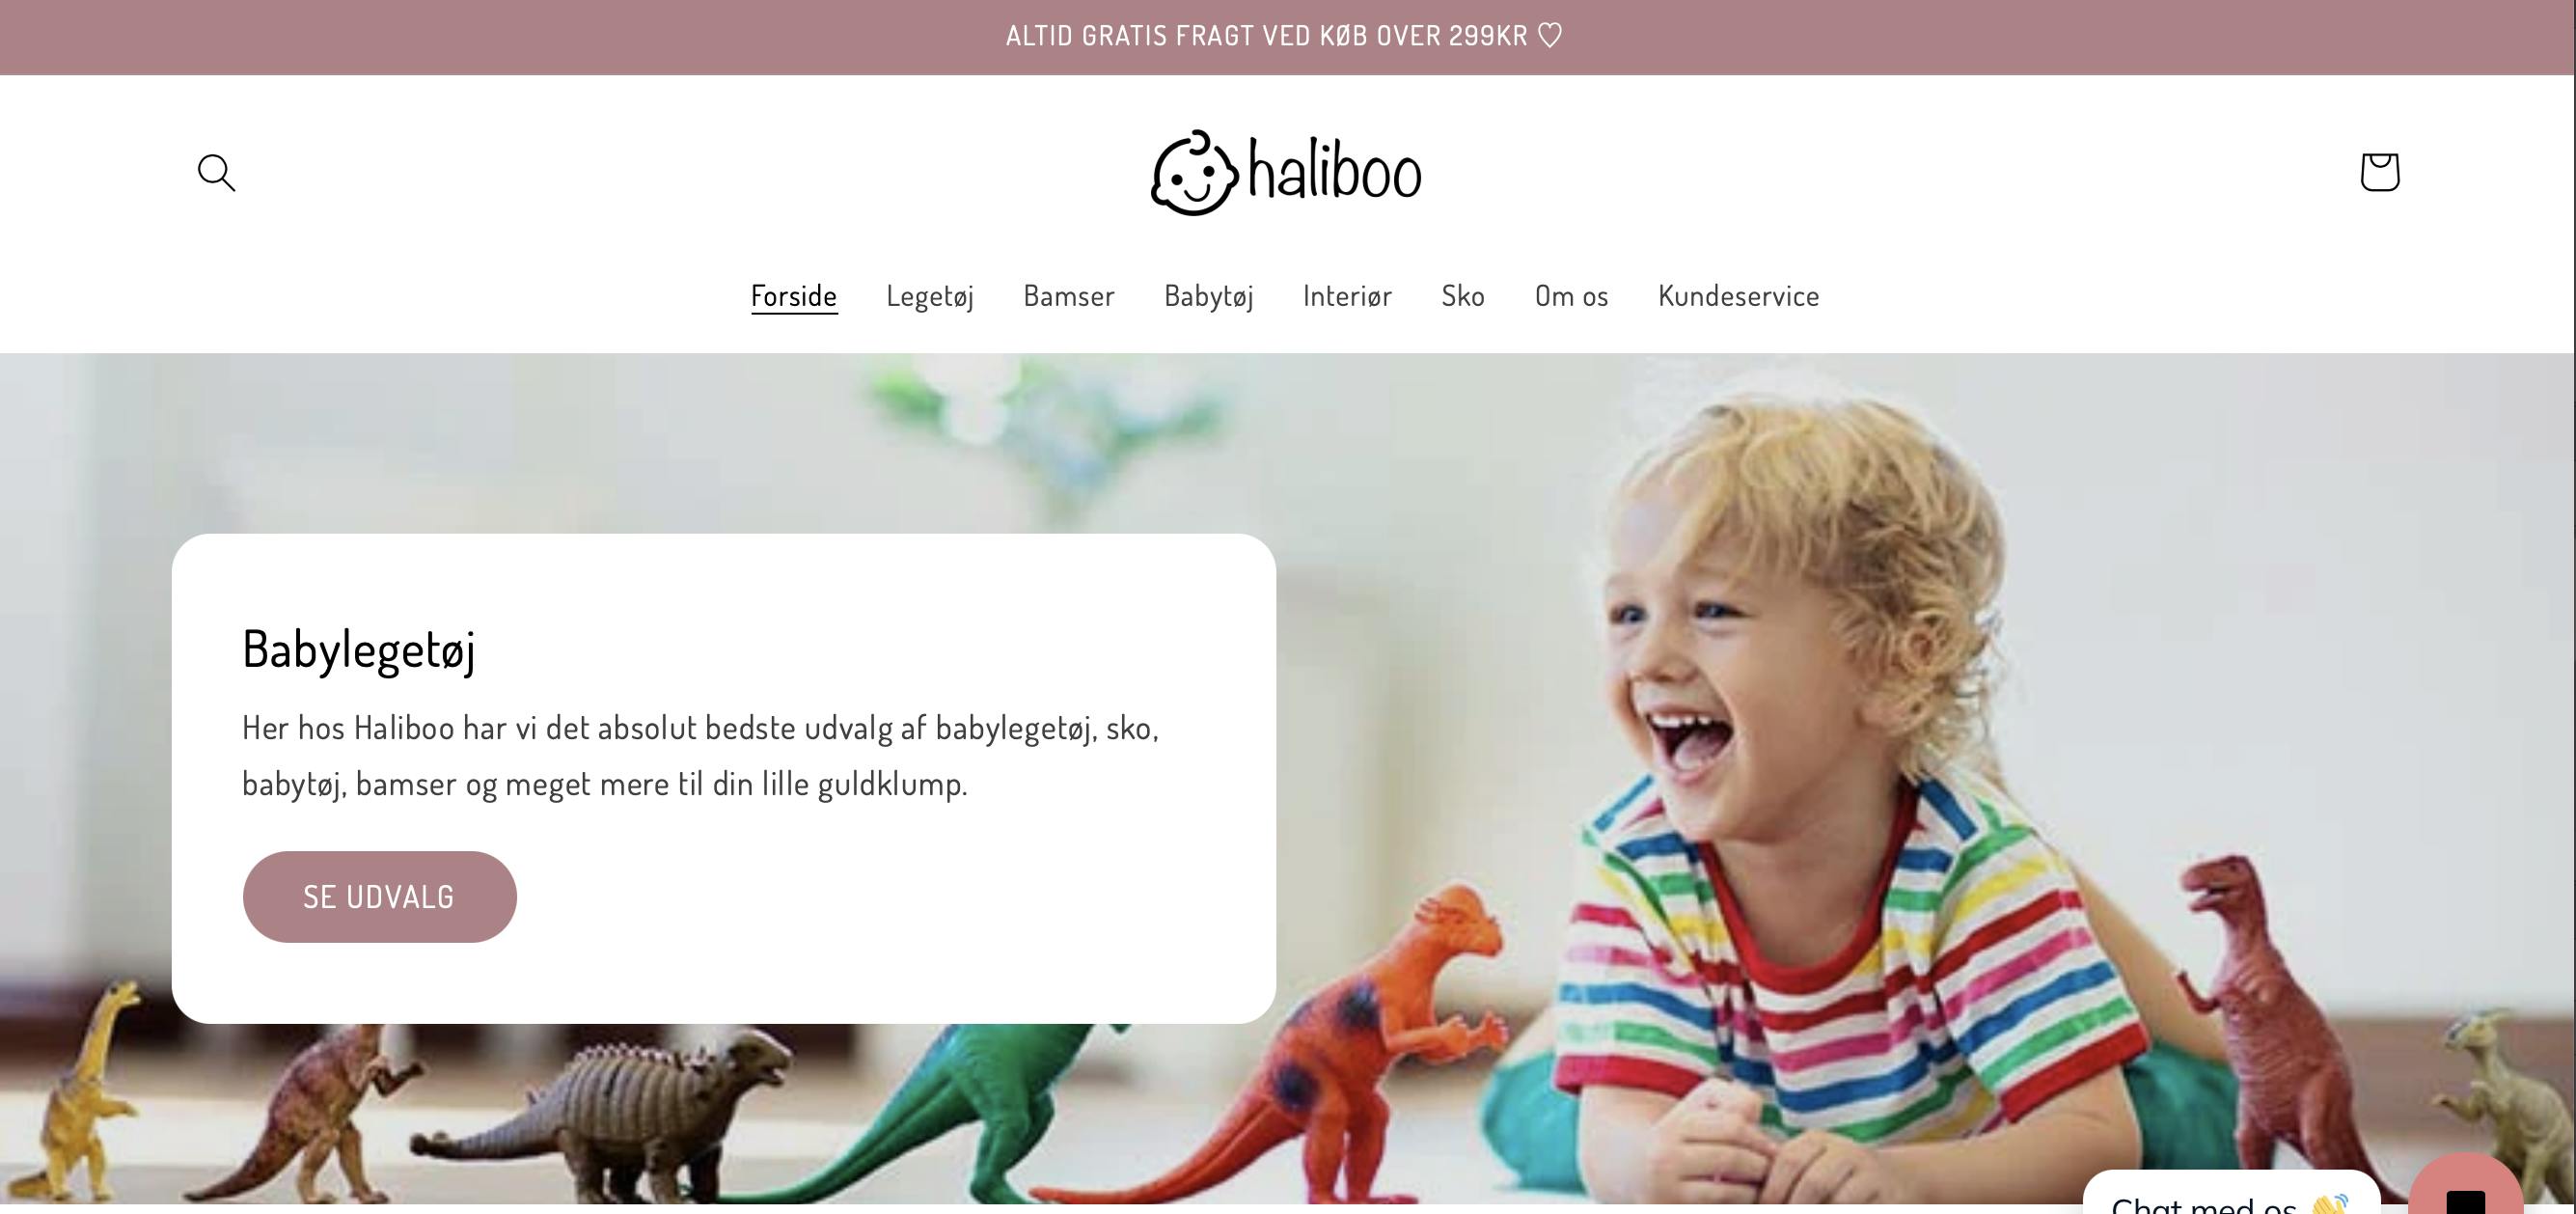 webshoppen med salg alt til babyer: Legetøj, sko, tøj